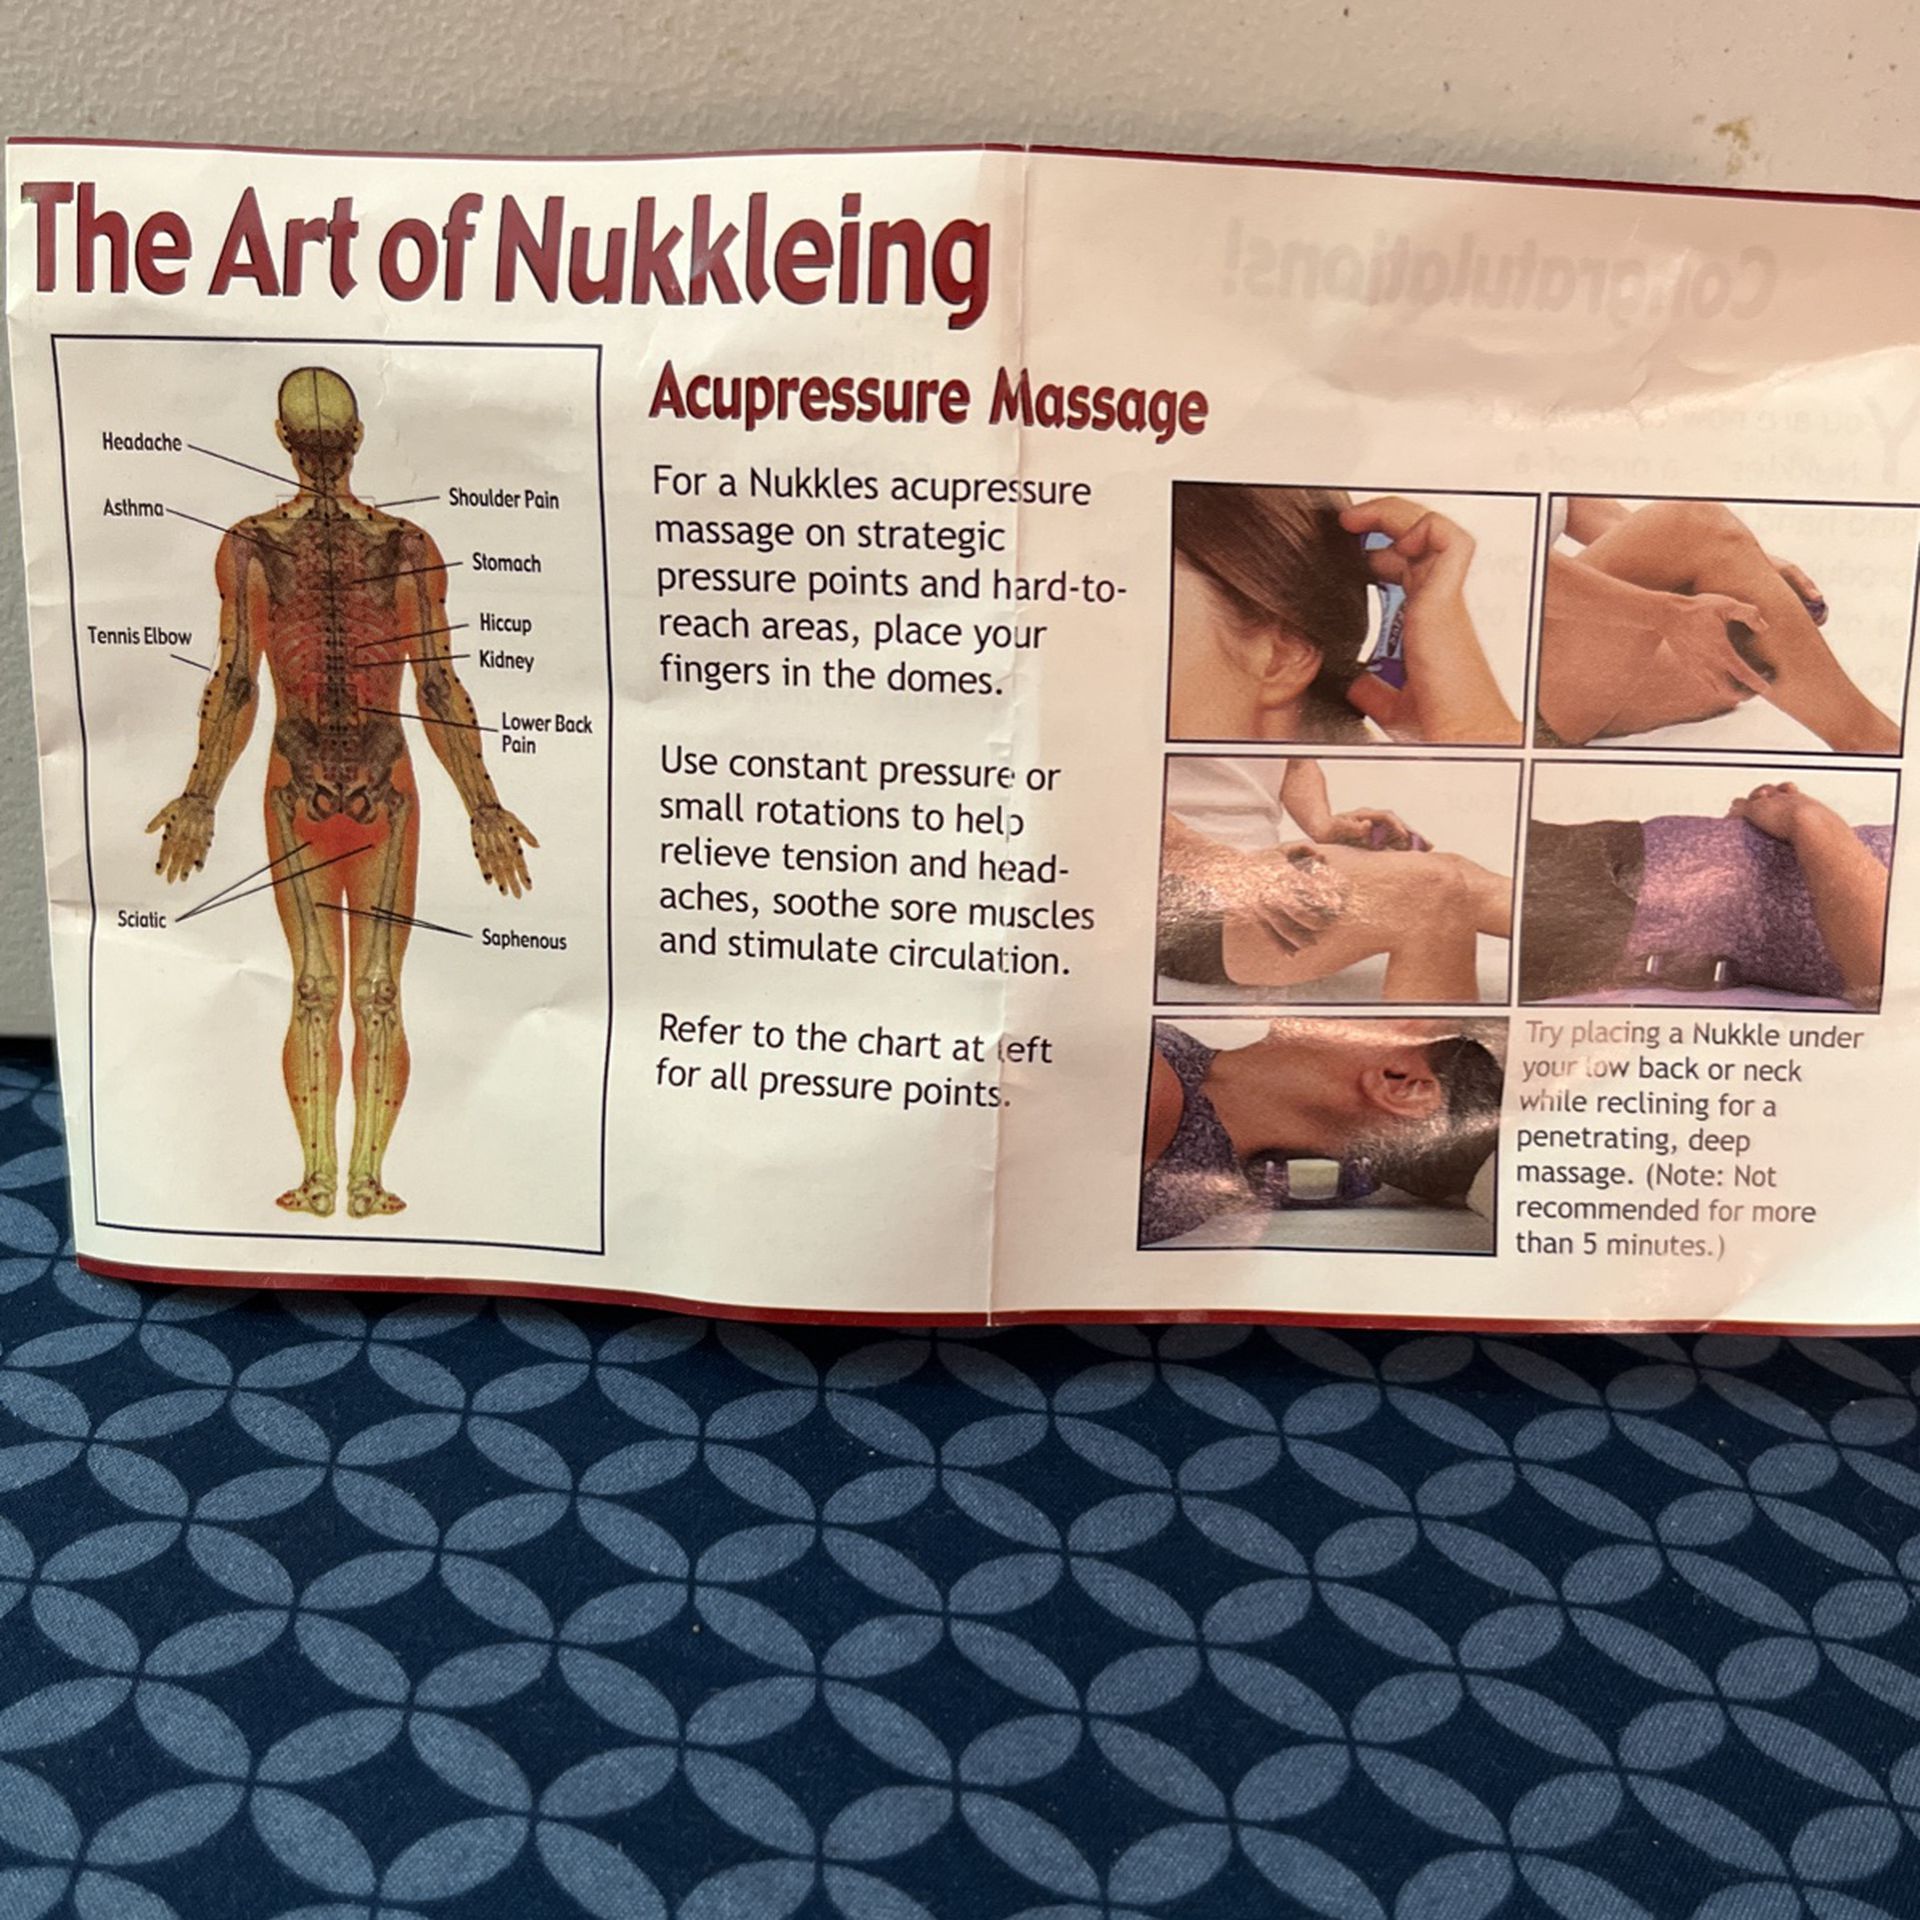 Mini Massager Nursal for Sale in Avondale, AZ - OfferUp